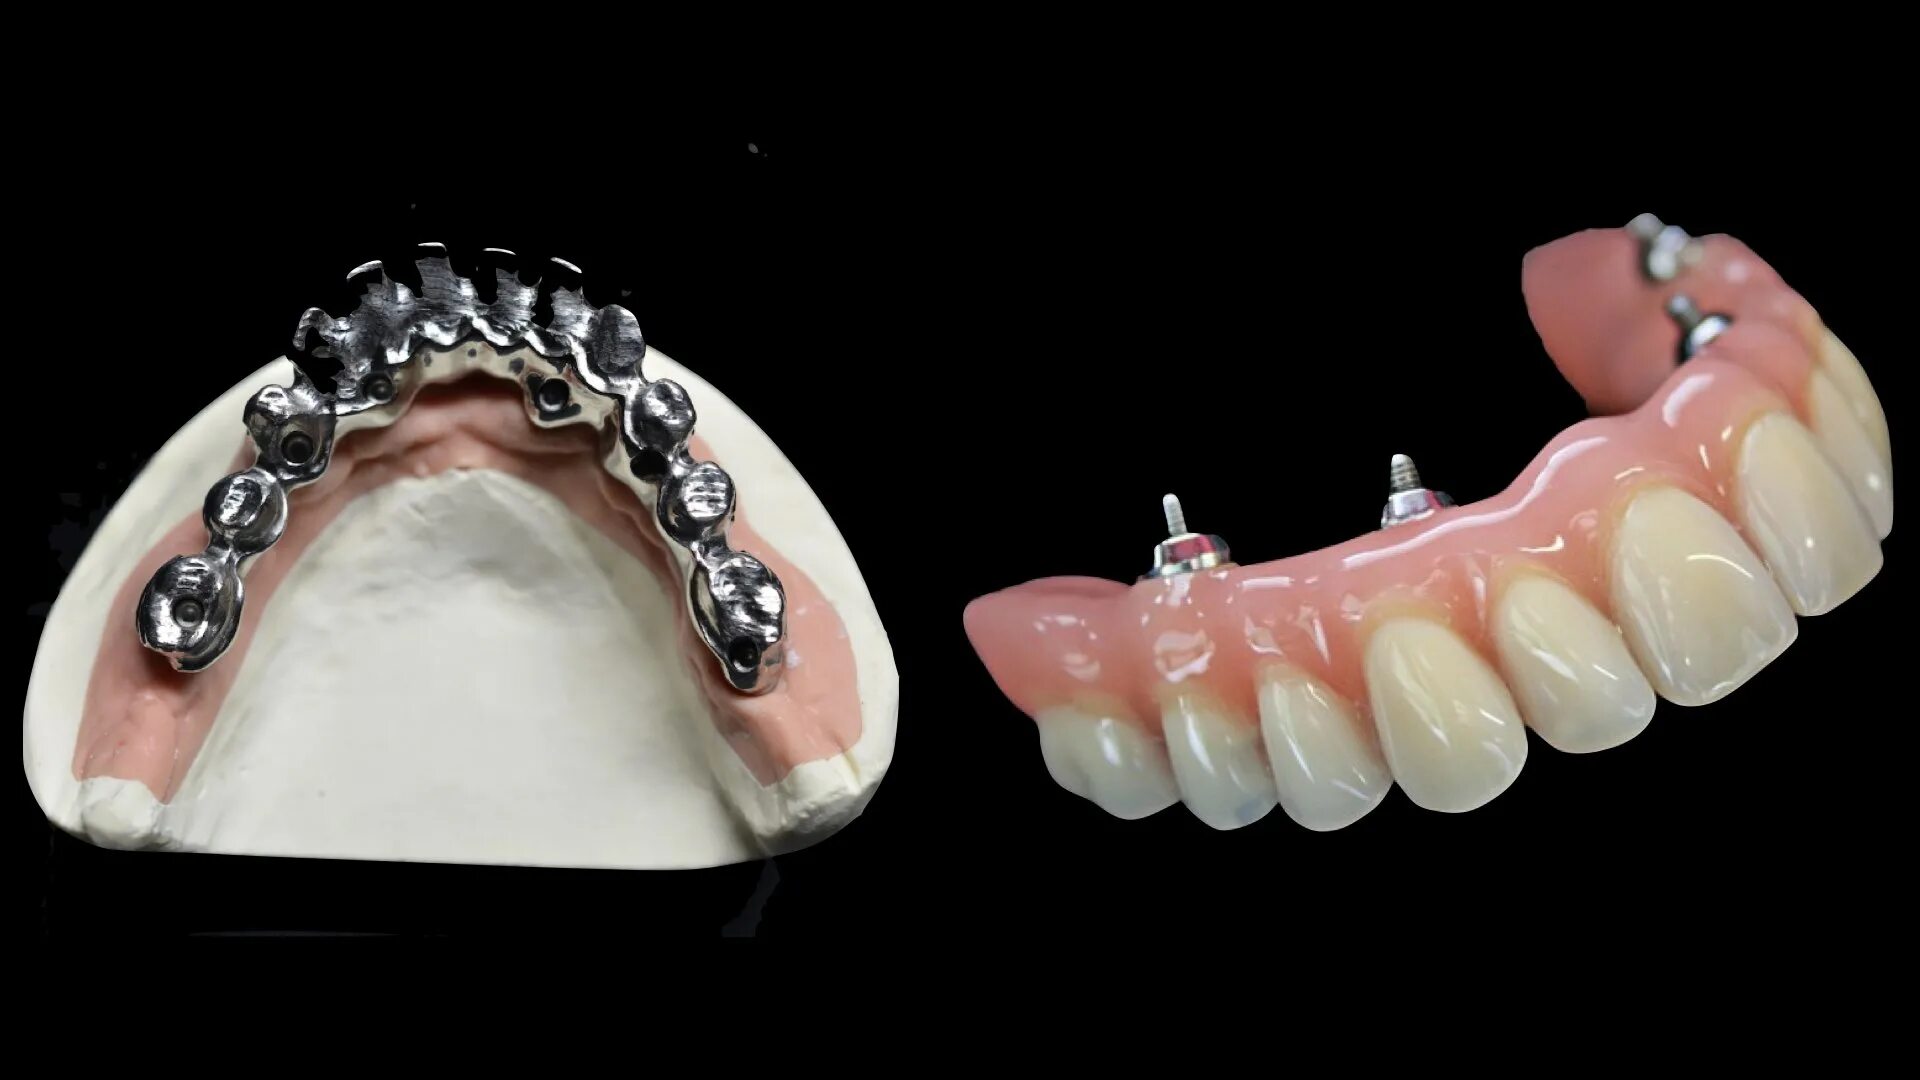 Несъемные зубные протезы на 4 имплантах. All on 4 Nobel Parallel армированный протез. Несъемные протезы на имплантатах. Несъемный протез на 4 имплантах.